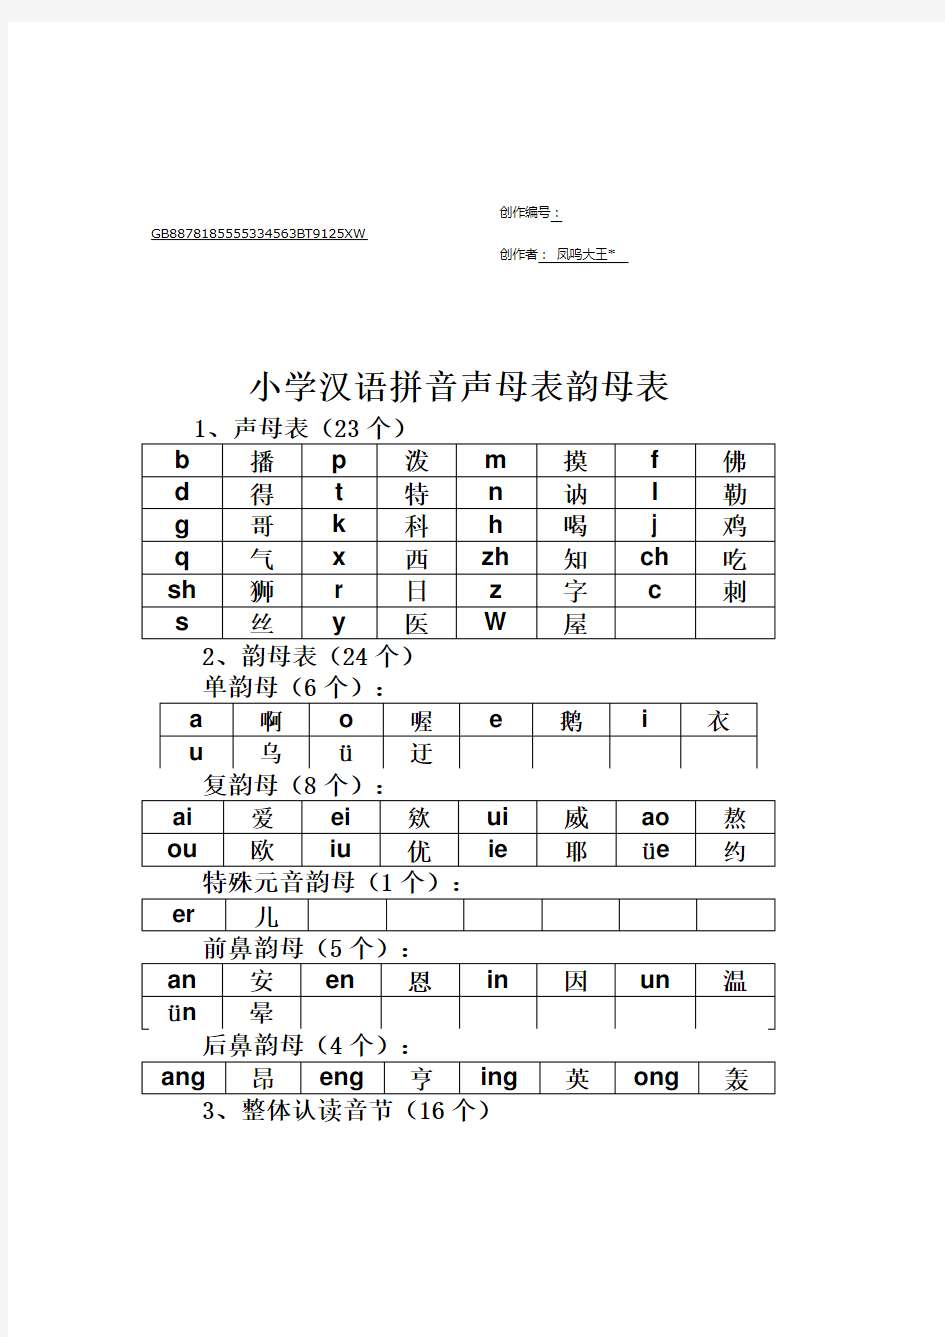 小学汉语拼音声母表、韵母表和整体认读表